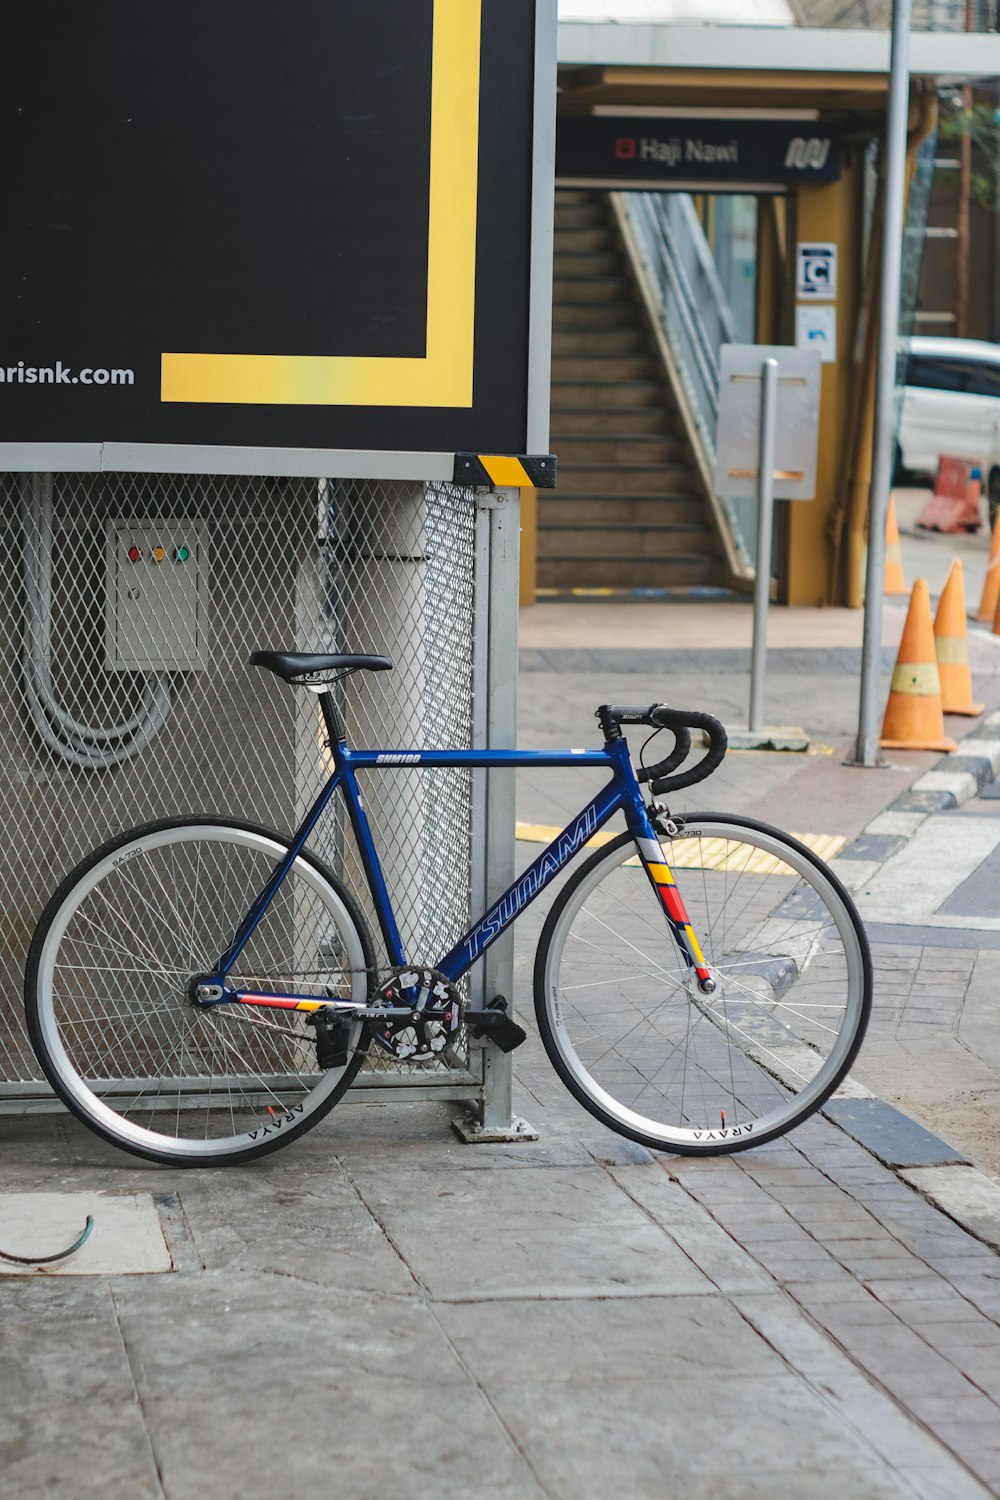 blau-schwarzes Rennrad tagsüber neben weißem Betongebäude geparkt